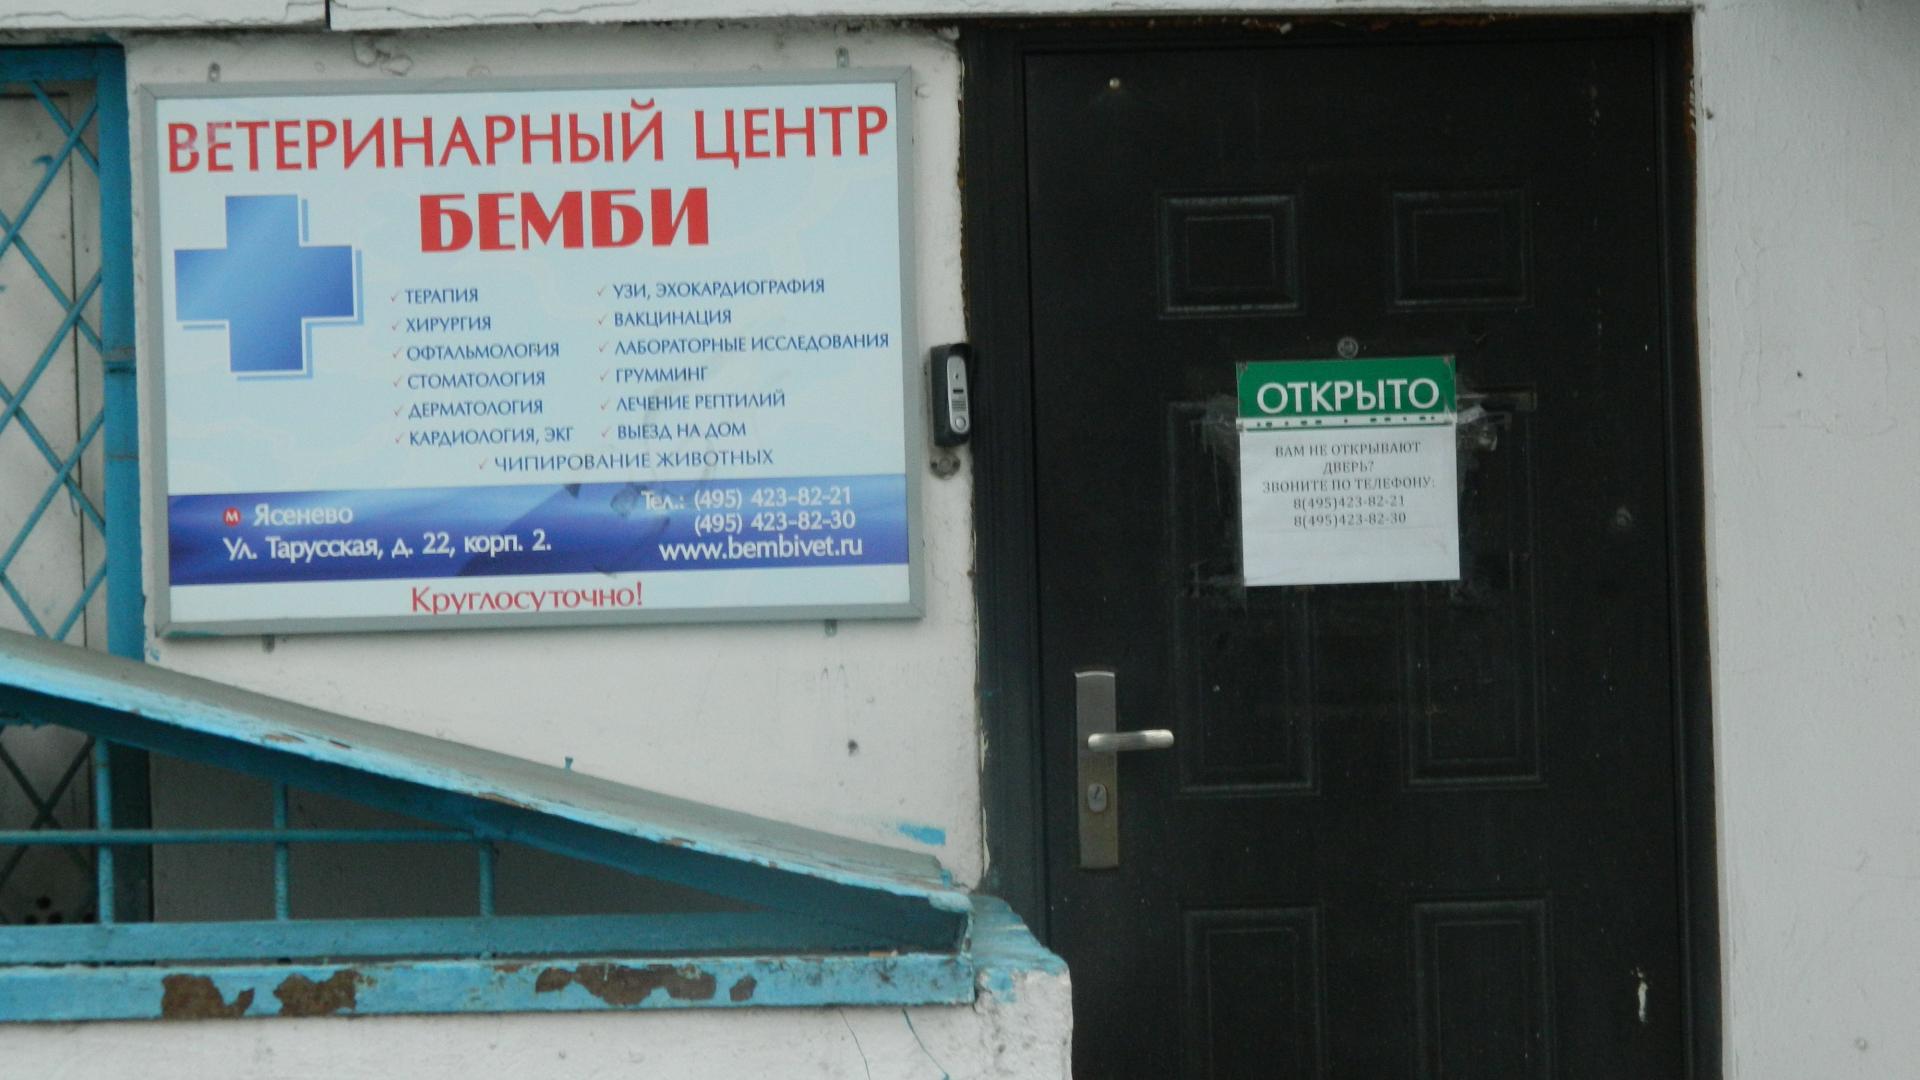 Ветеринарная клиника в Ясенево. - фотография